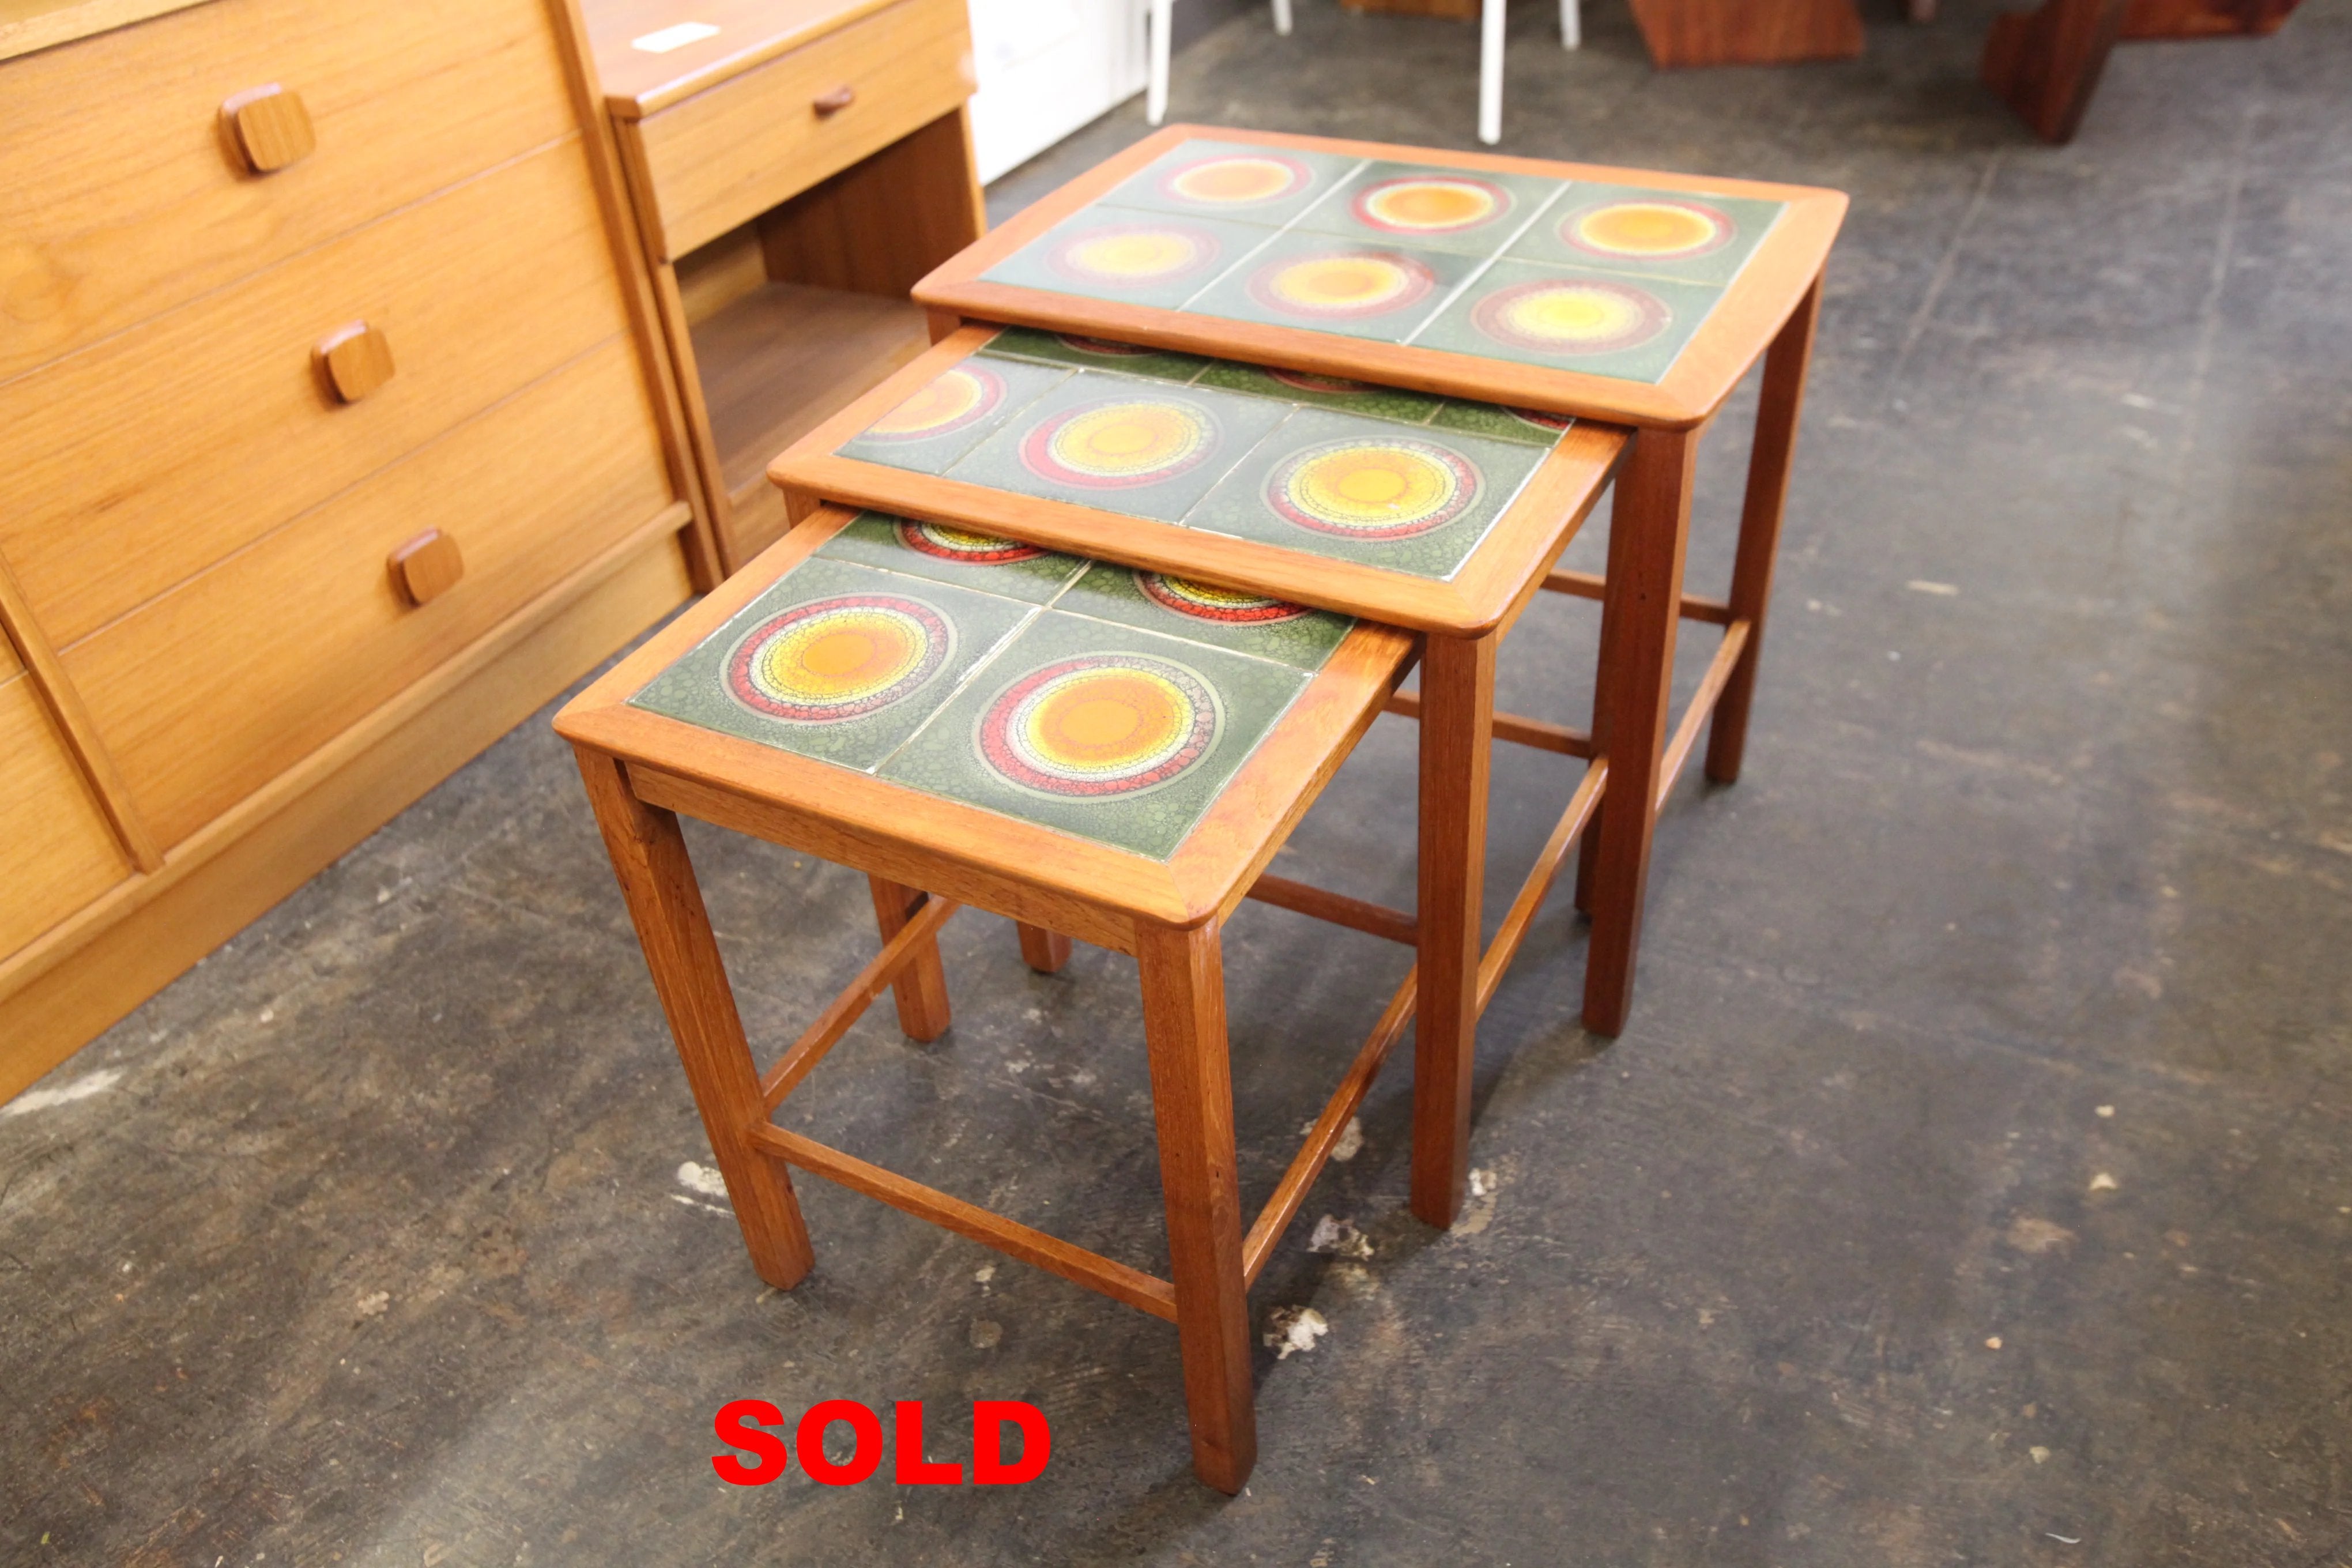 Vintage Teak & Tile 3 piece Nesting Table Set (21.25" x 14.75" x 19"H)